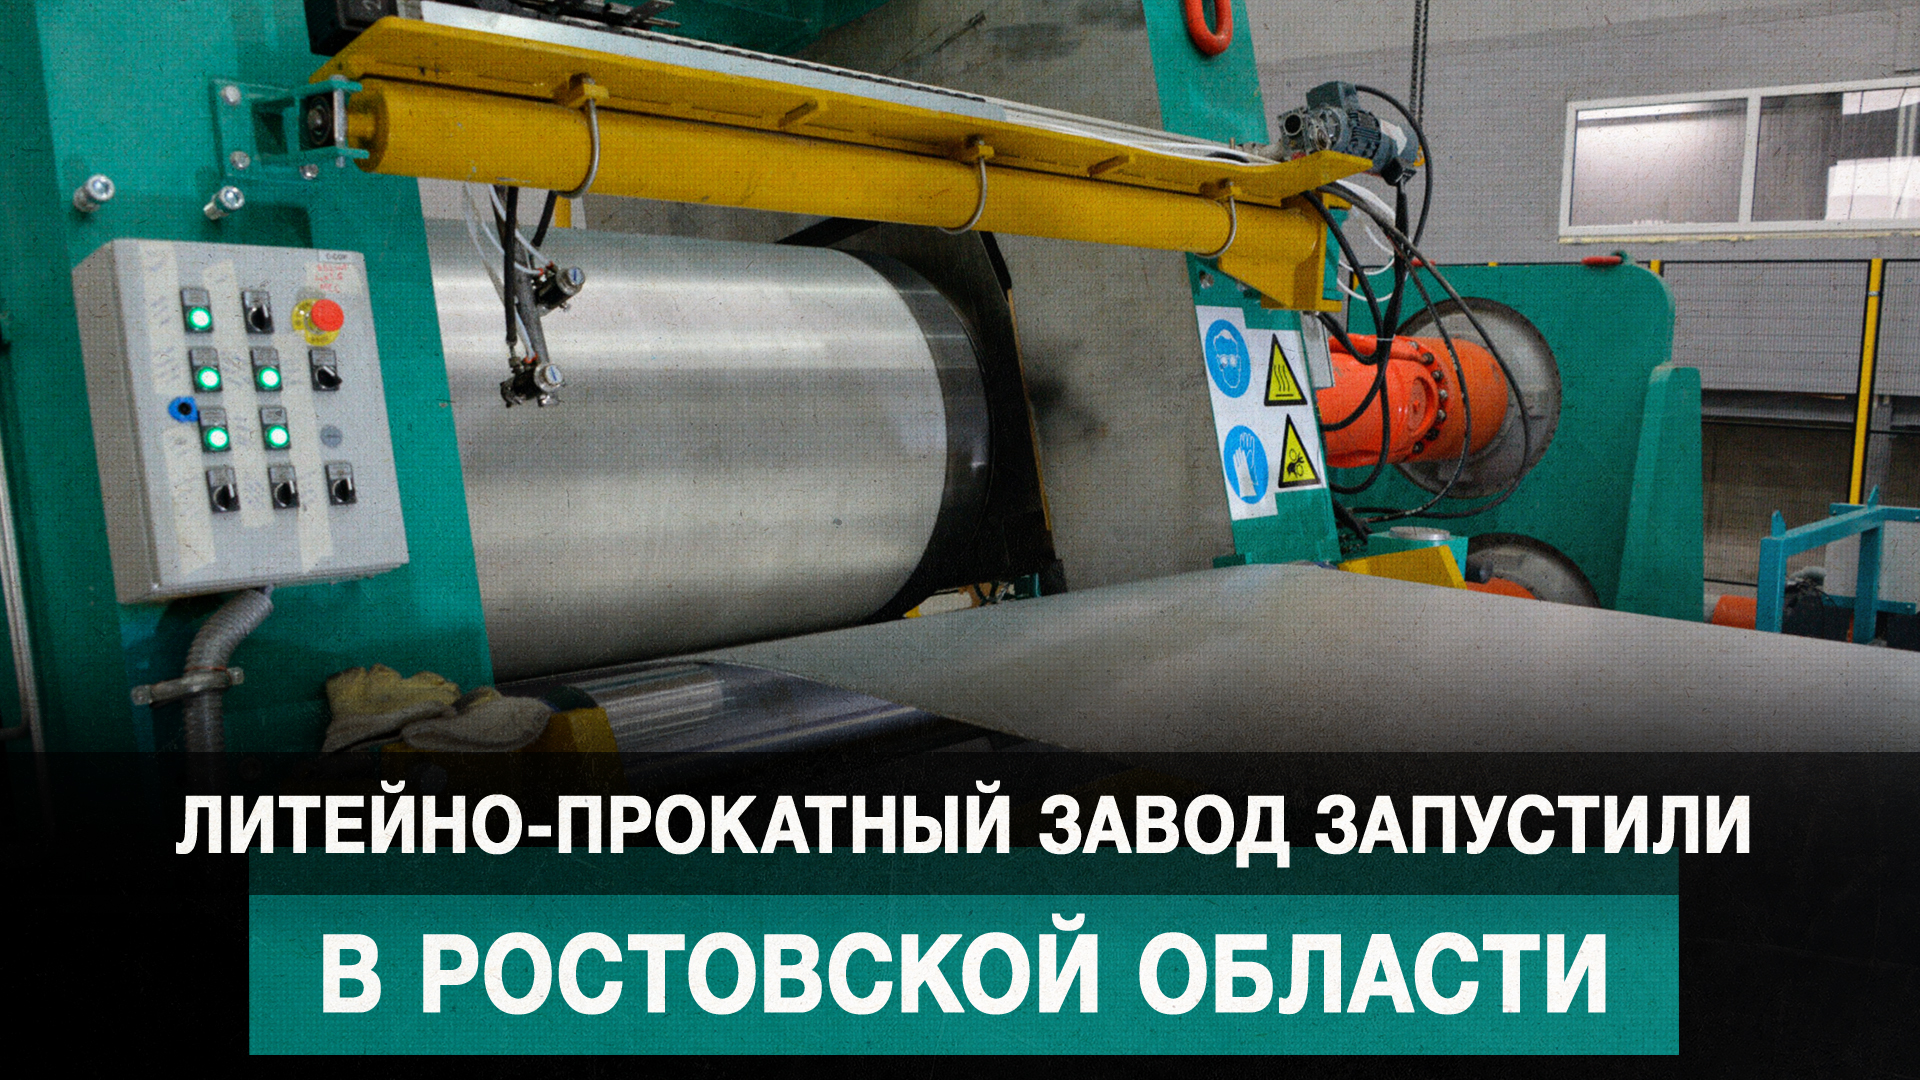 Литейно-прокатный завод запустили в Ростовской области